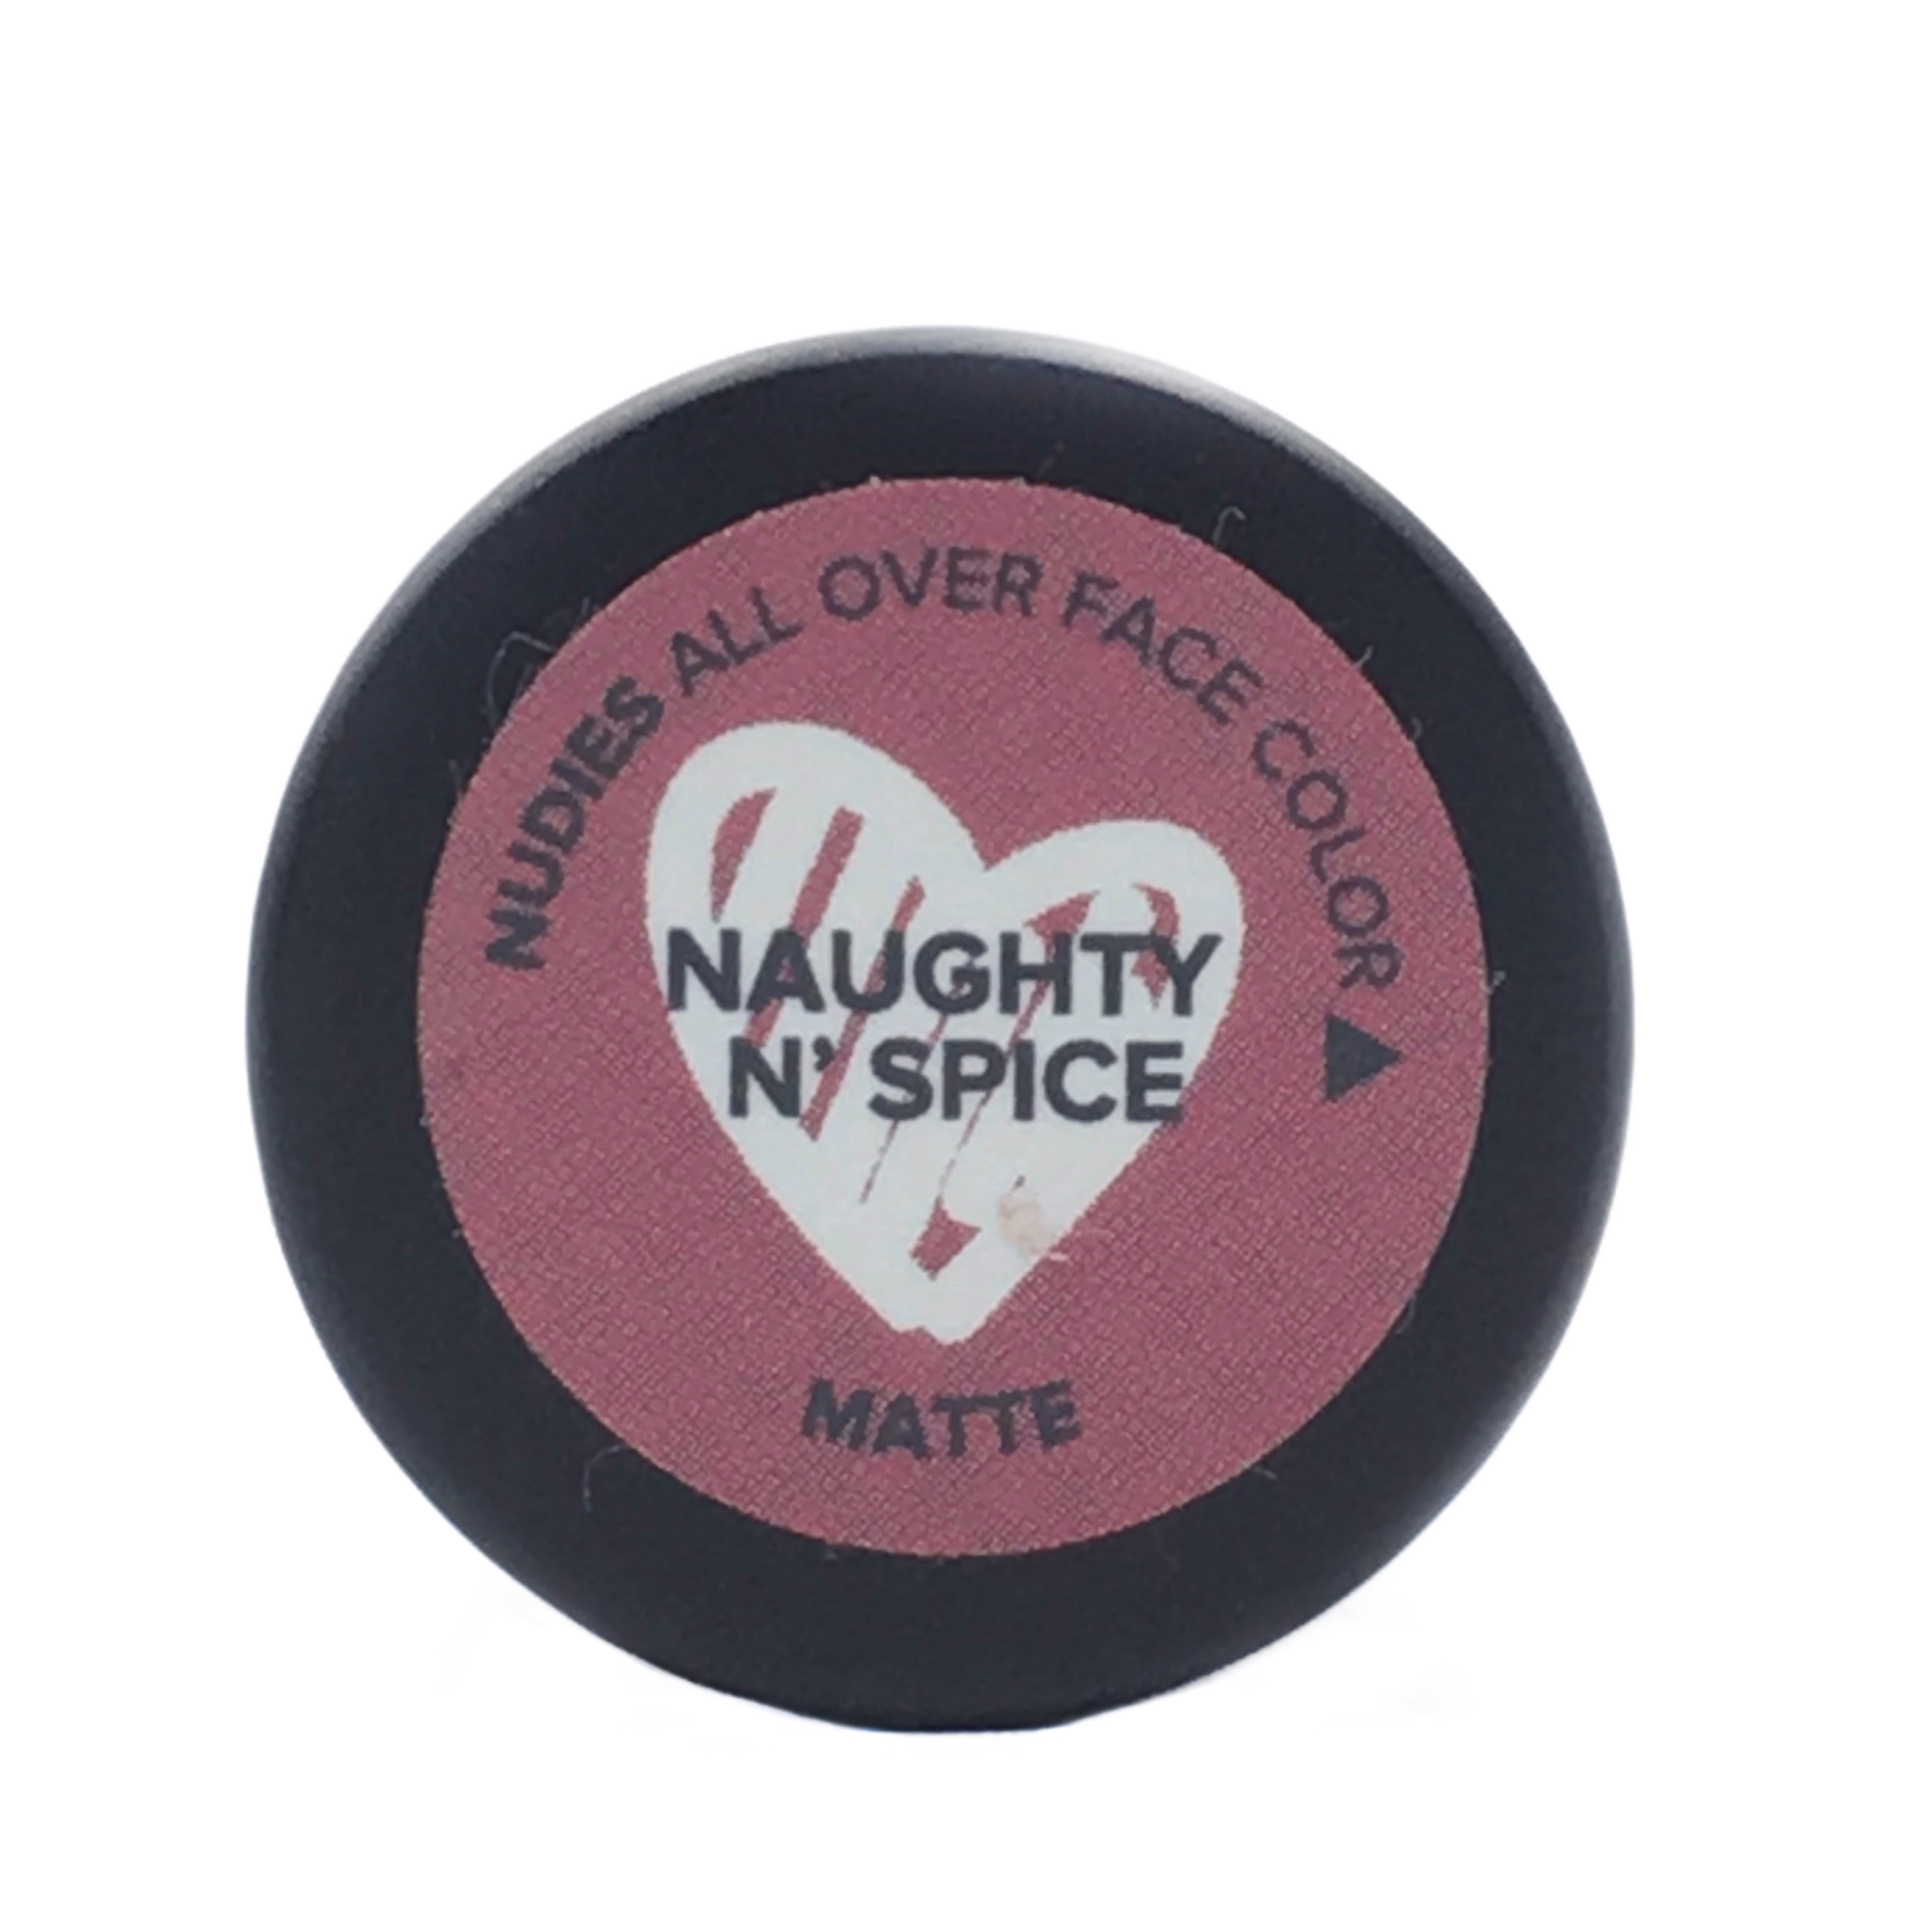 NudeStix Nudies Naughty N'Spice Matte